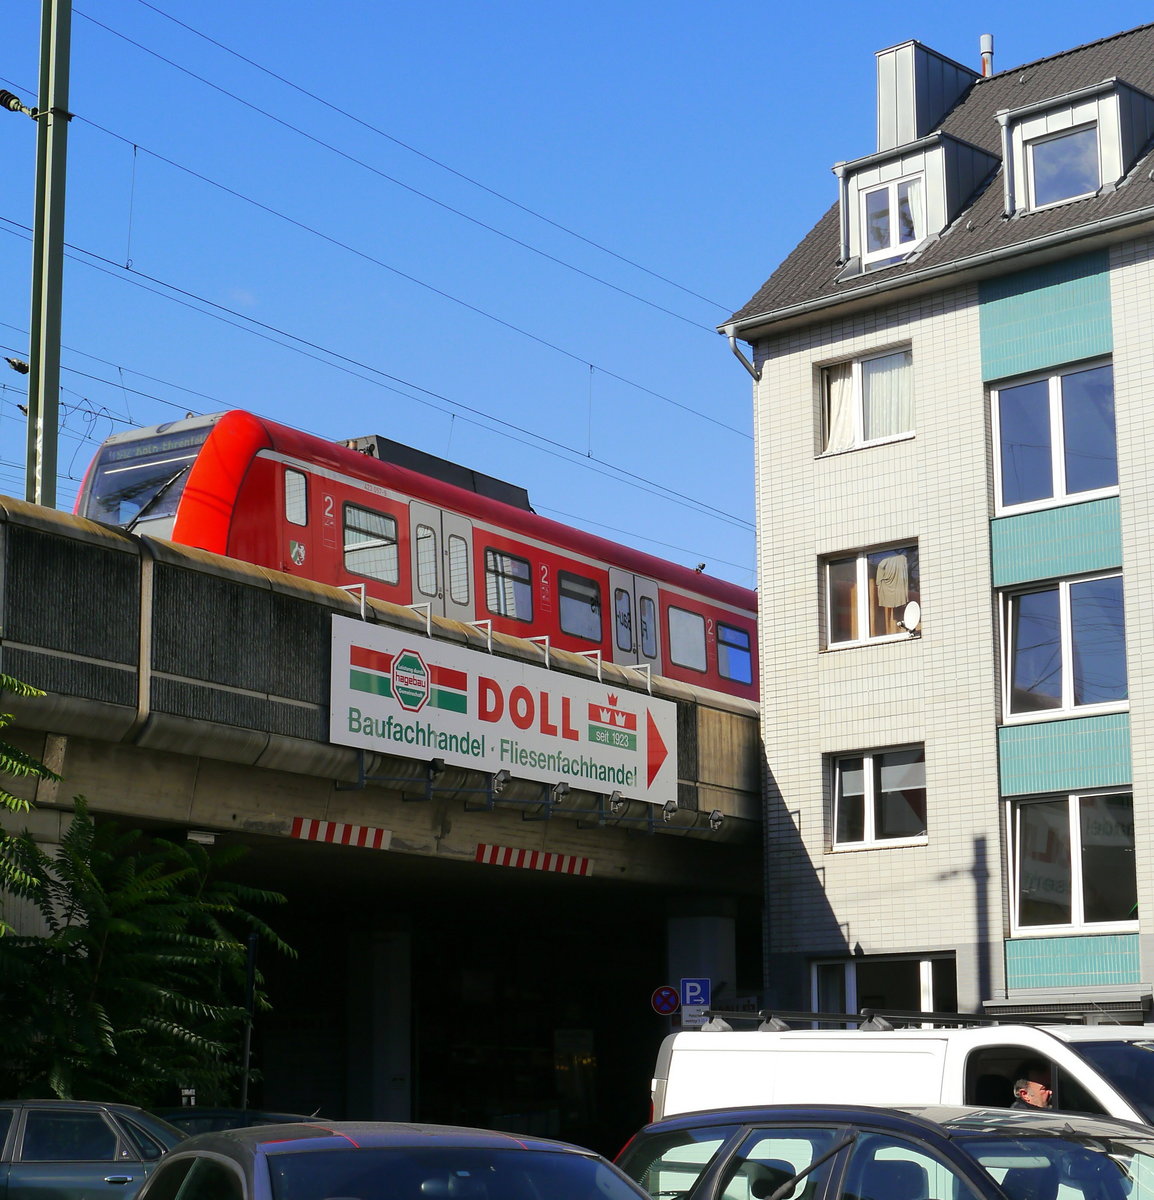 S-Bahn Köln, Abschnitt Hbf - Hansaring: Und dazwischen passen noch 2 Gleise für die Erweiterung? Aufnahme: 5.10.16, Überführung Köln, Weidengasse. Auf der Brücke eine S 12 (423-Doppeltraktion) Au - K-Ehrenfeld.